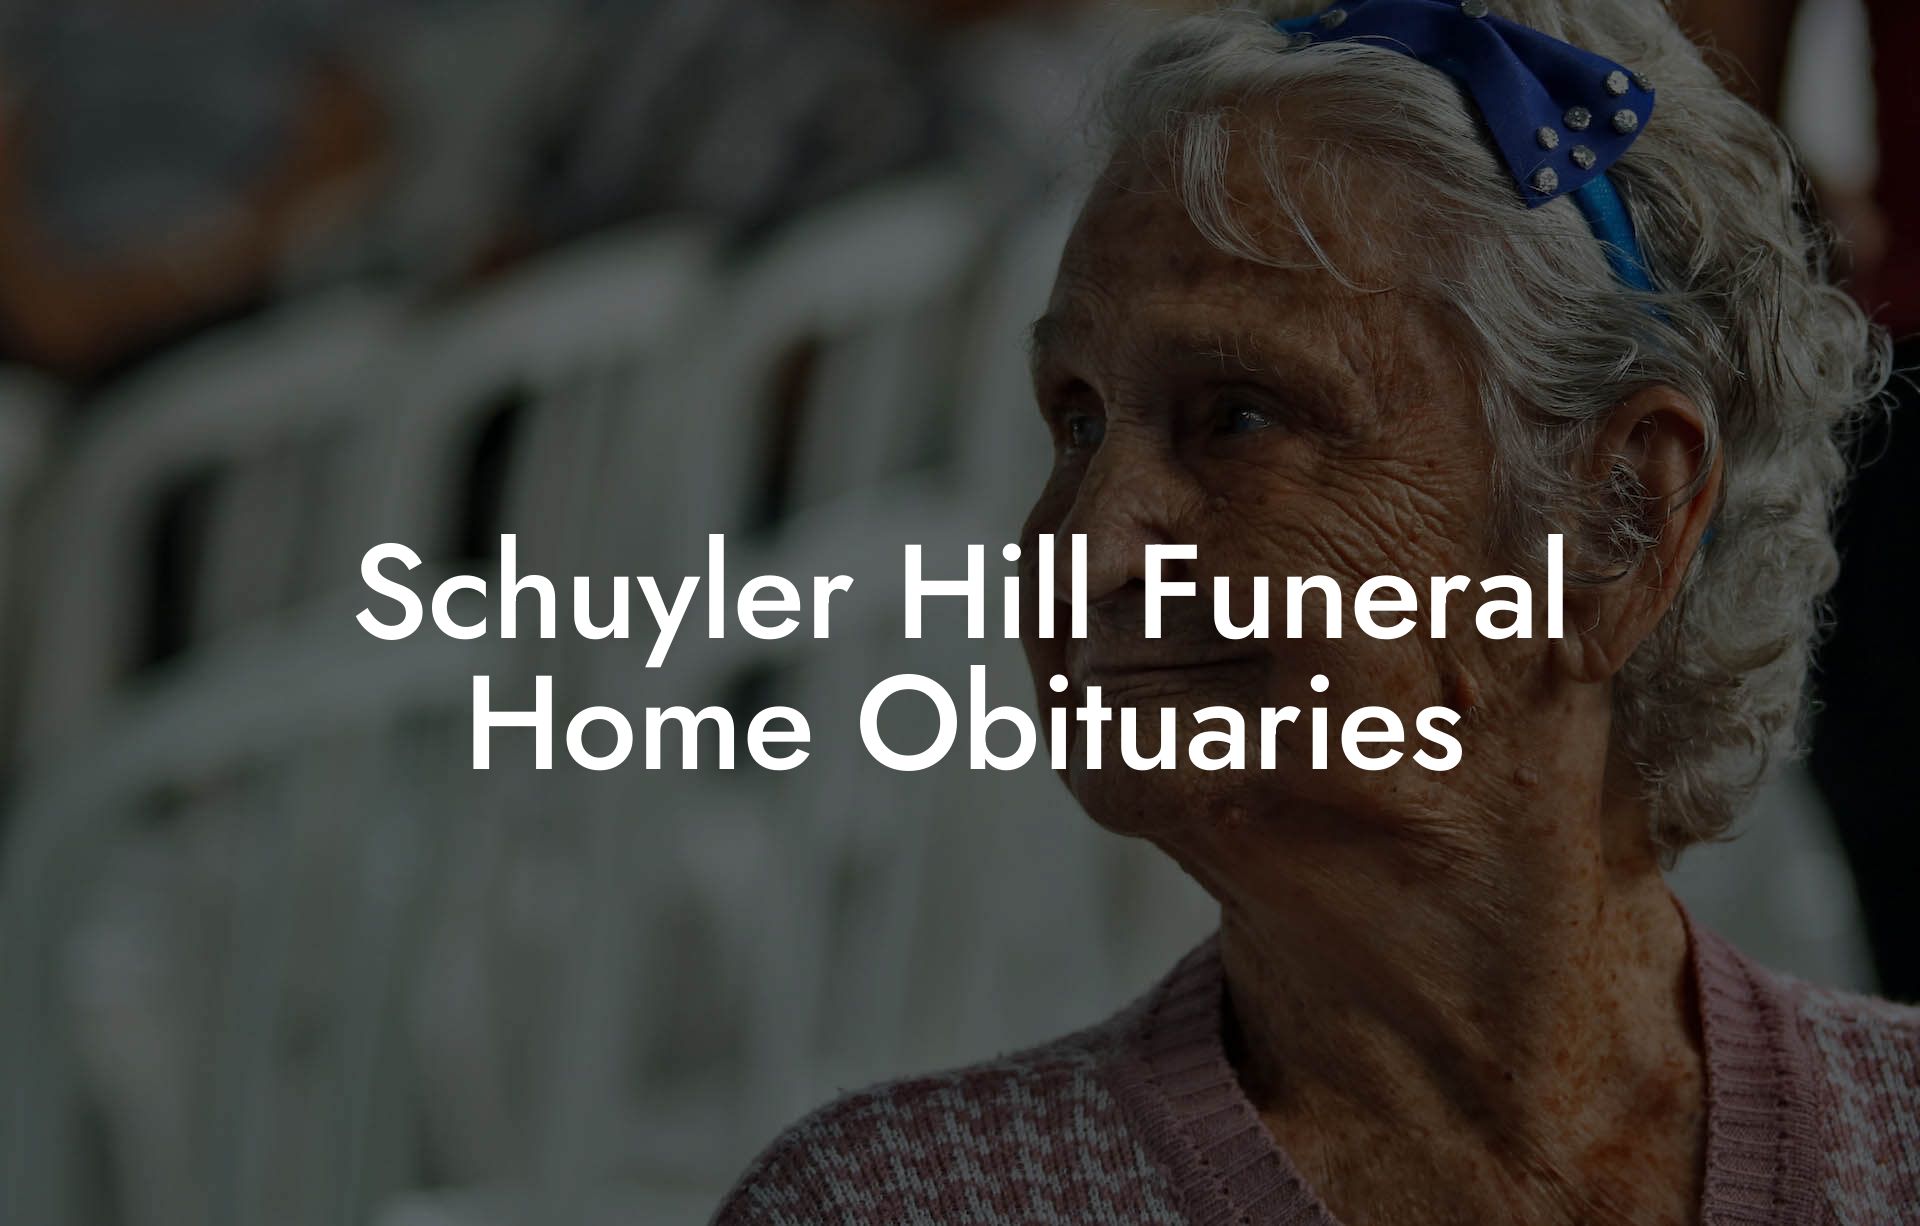 Schuyler Hill Funeral Home Obituaries